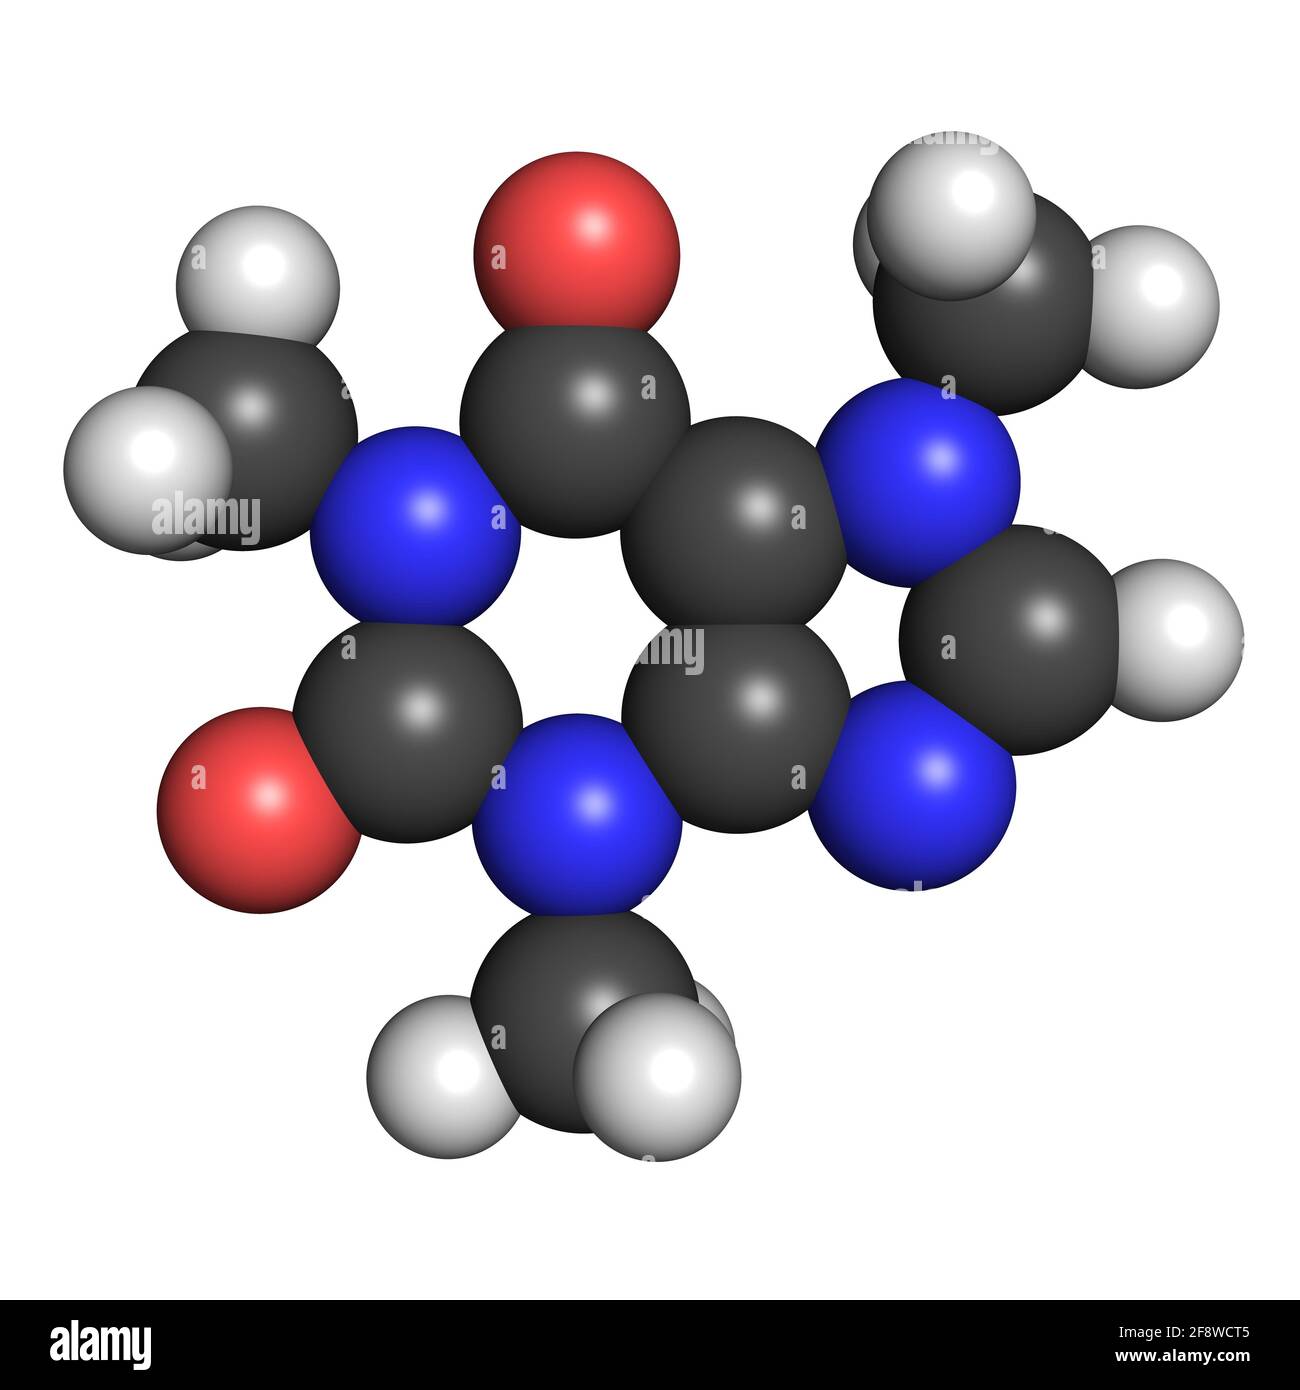 La molécule de caféine stimulant du système nerveux central 3D rend la structure chimique Banque D'Images